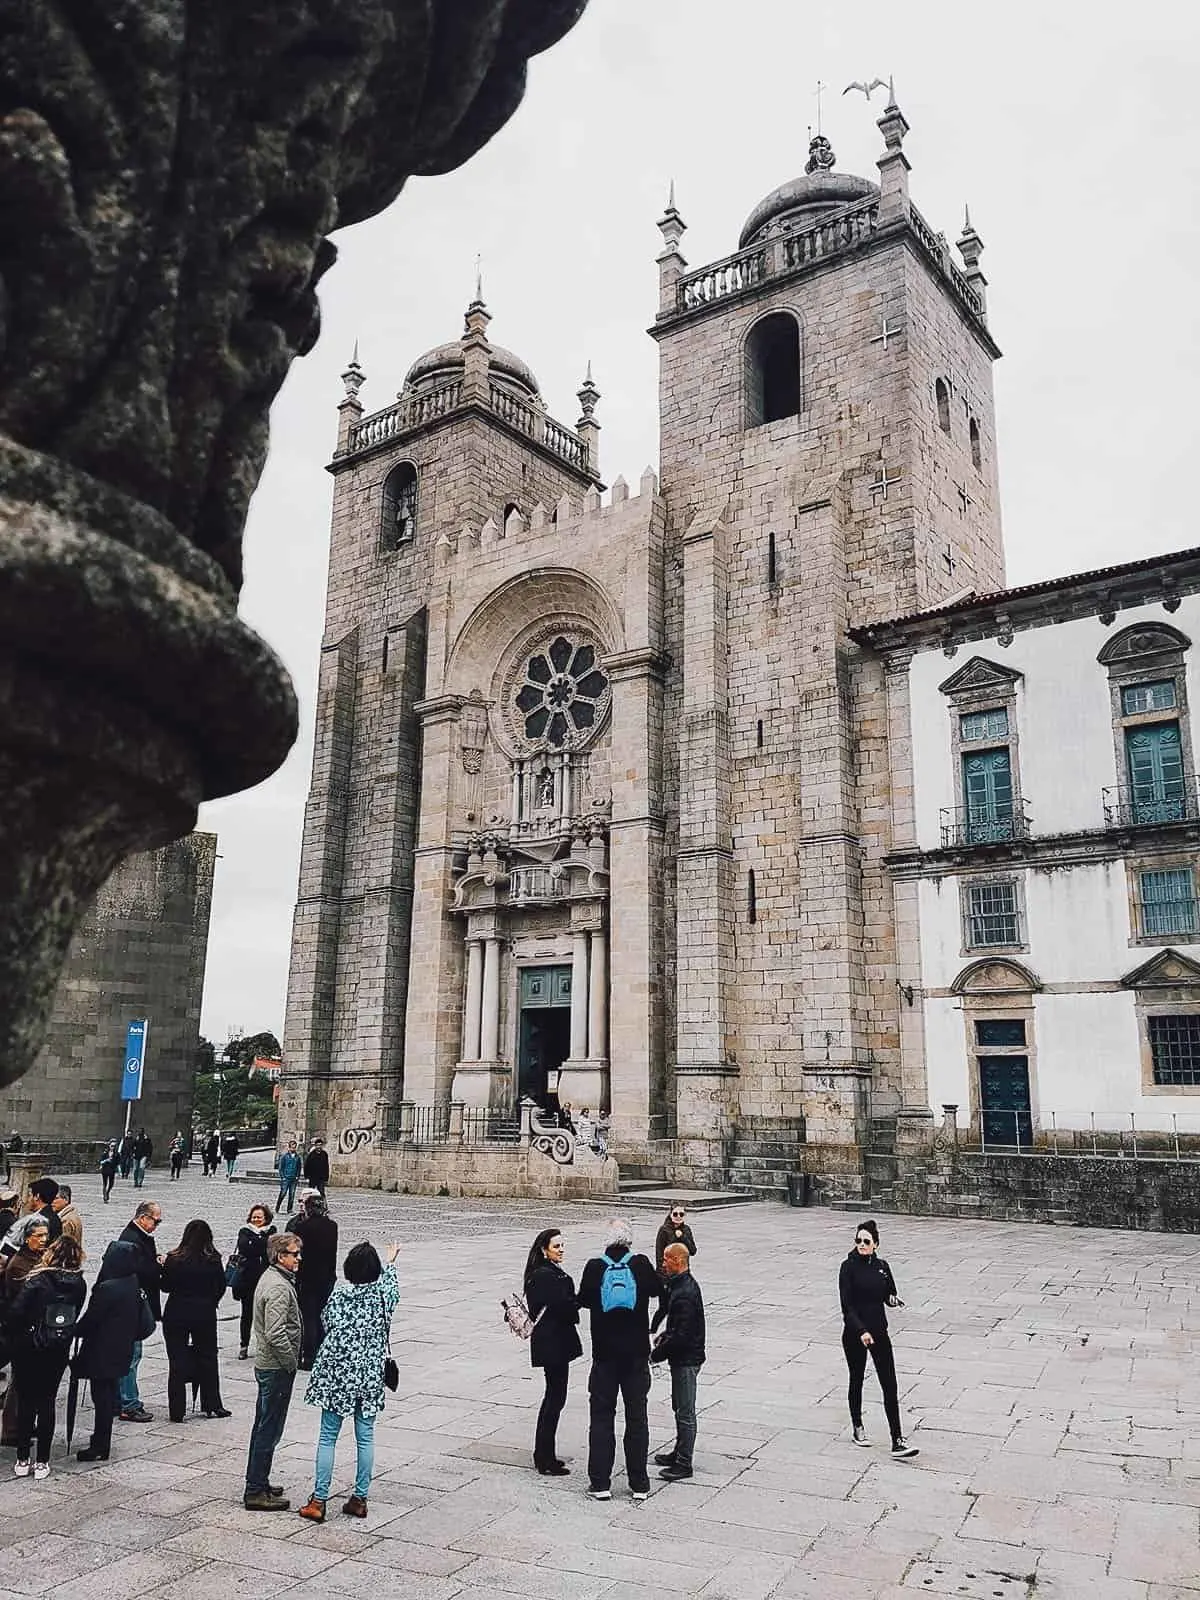 Porto Cathedral in Portugal